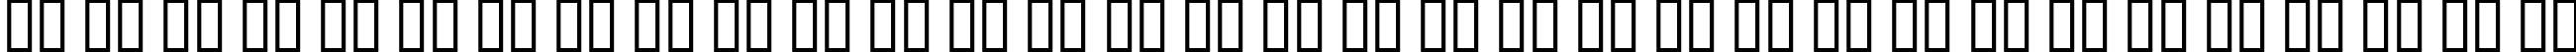 Пример написания русского алфавита шрифтом DuererGotisch